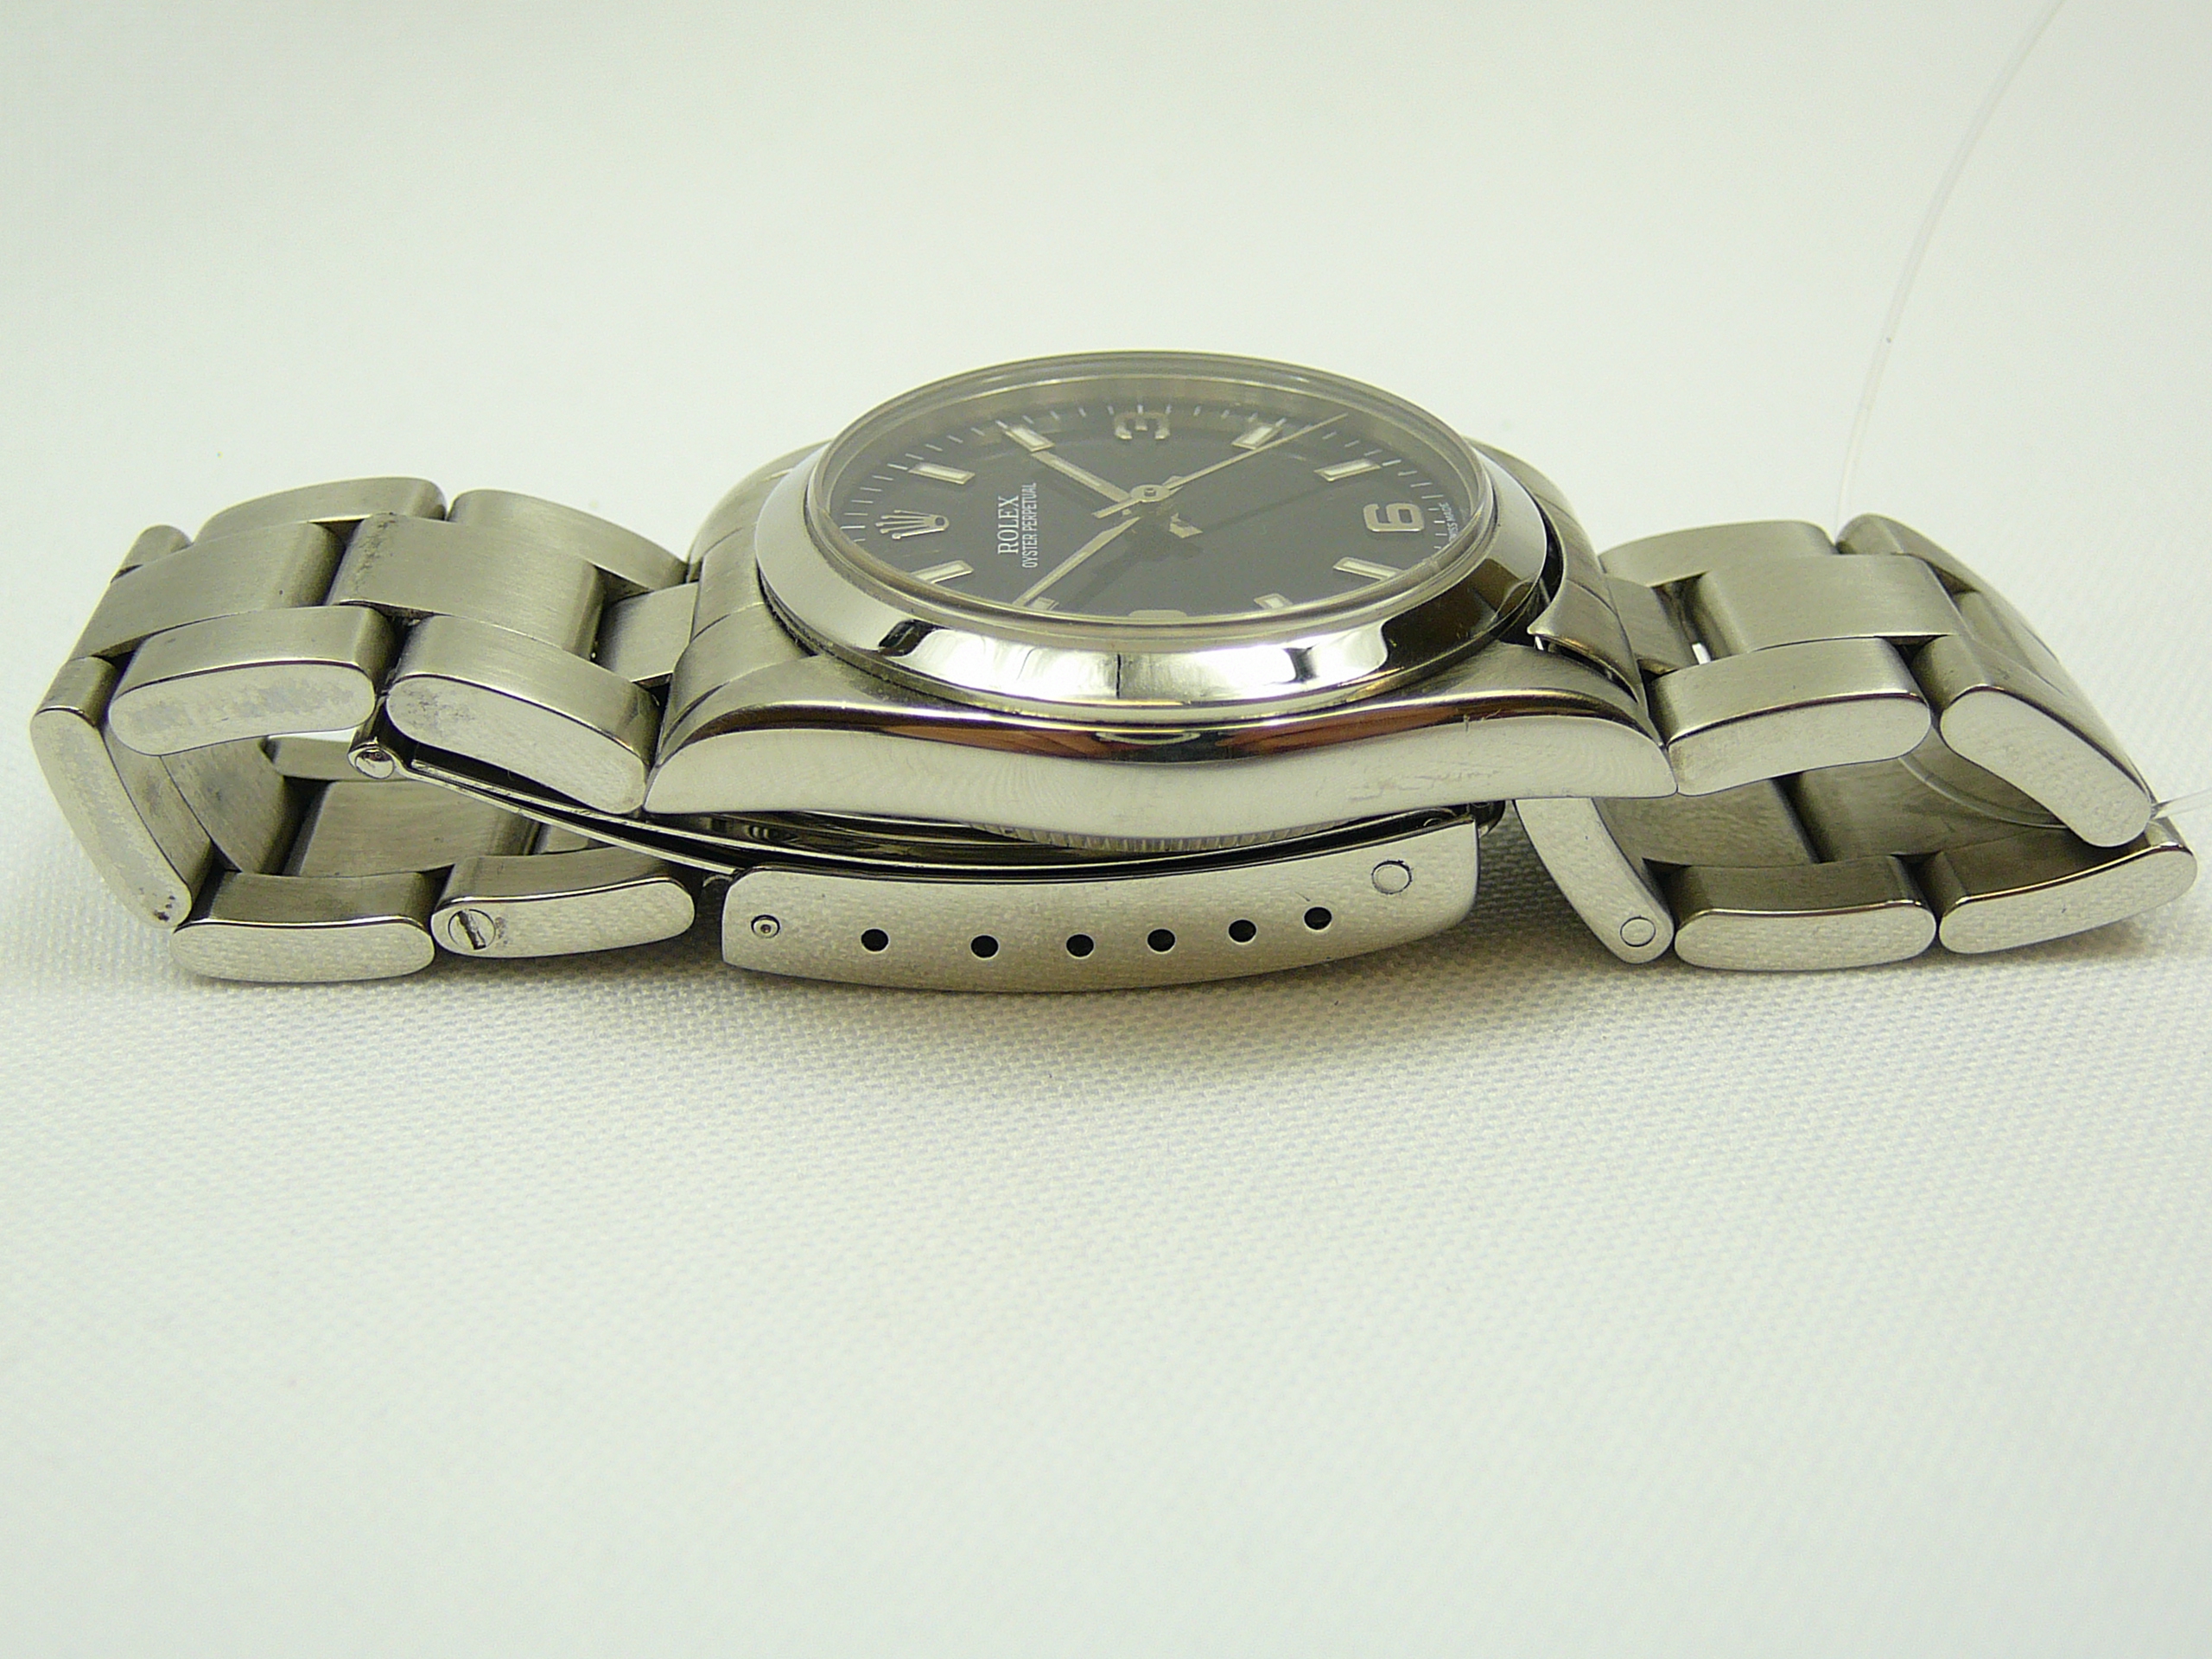 Ladies Rolex Wrist Watch - Image 4 of 5